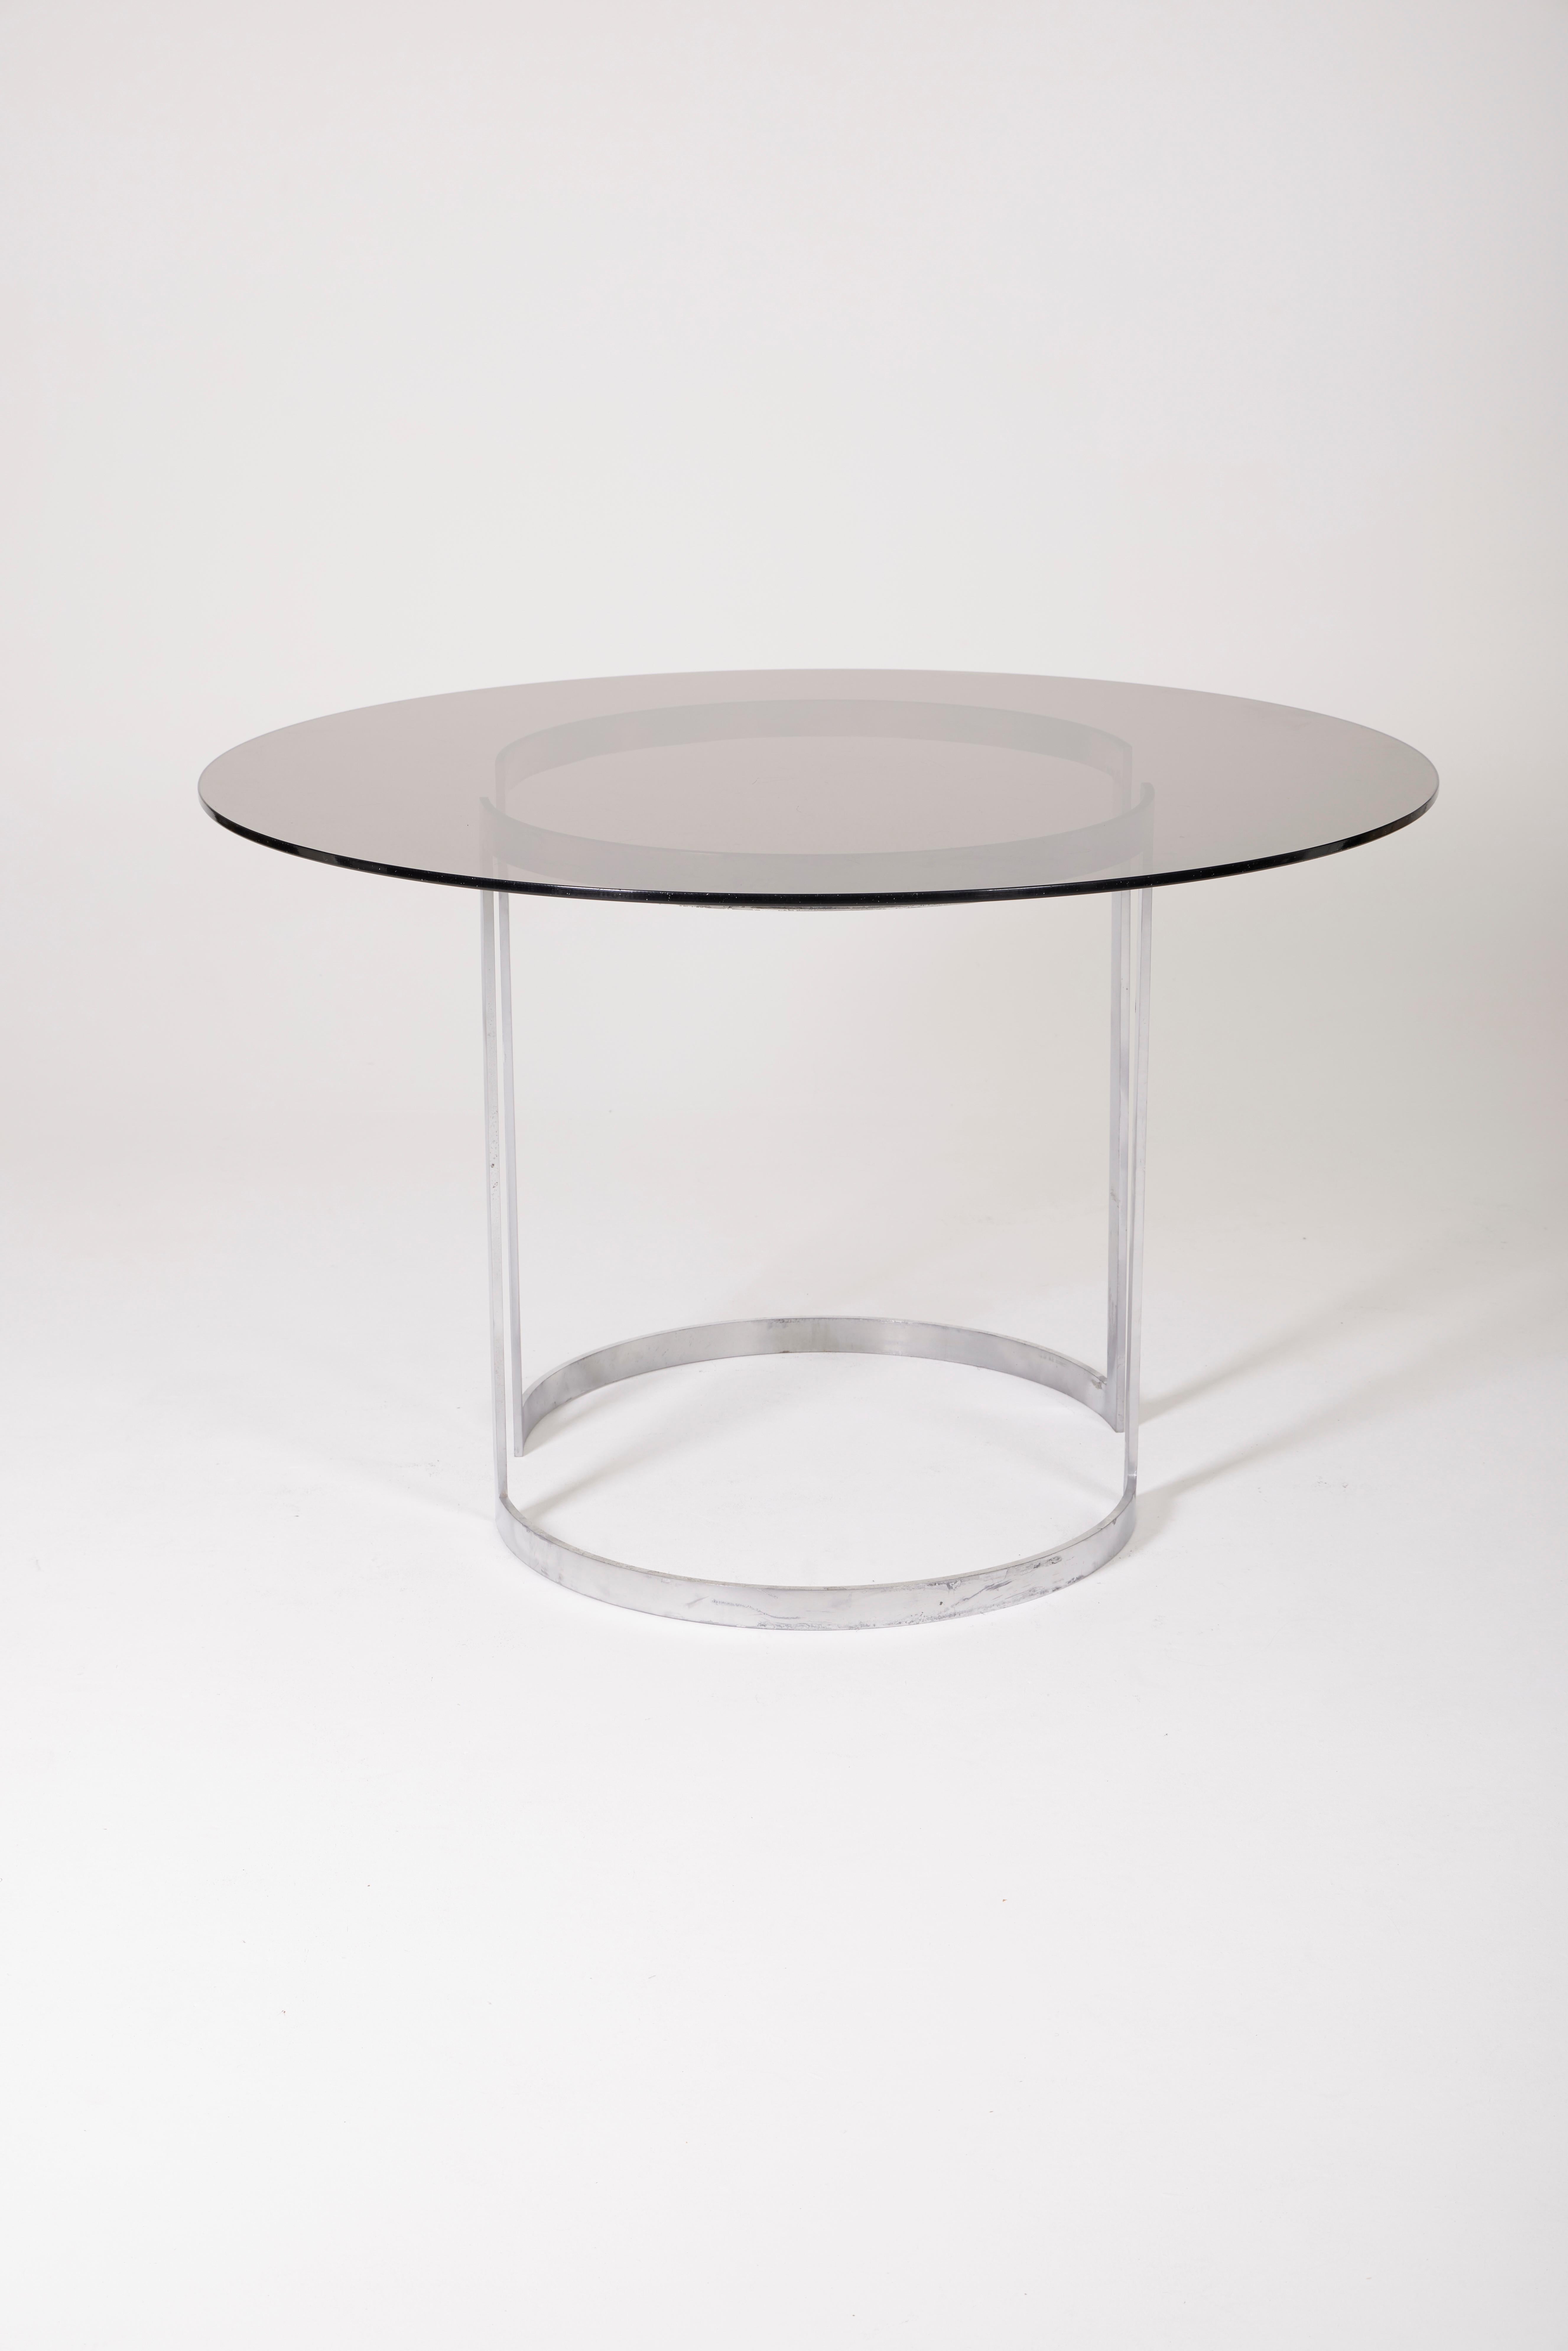 Boris Tabacoff Tisch aus Glas und Metall (20. Jahrhundert)